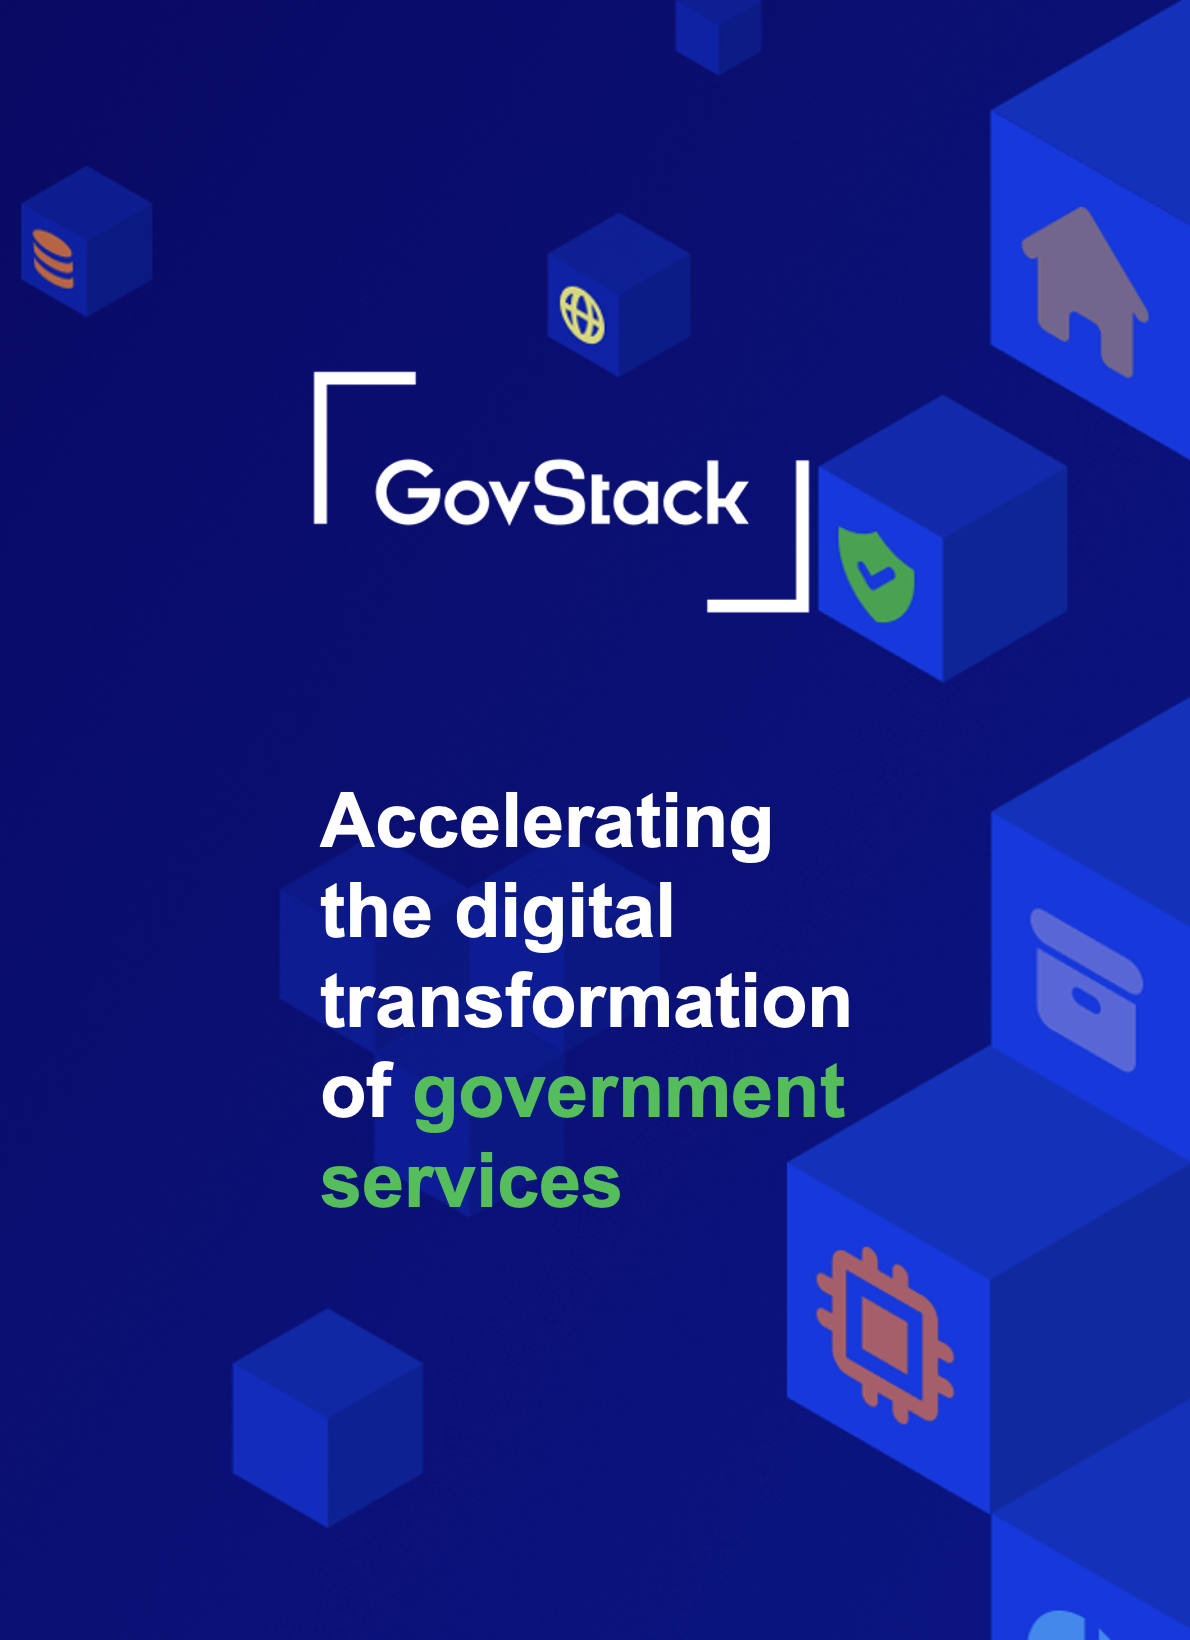 La iniciativa GovStack ayuda a los gobiernos a crear infraestructuras digitales sostenibles y a prestar servicios digitales centrados en las personas. Descubra cómo beneficiarse y contribuir.